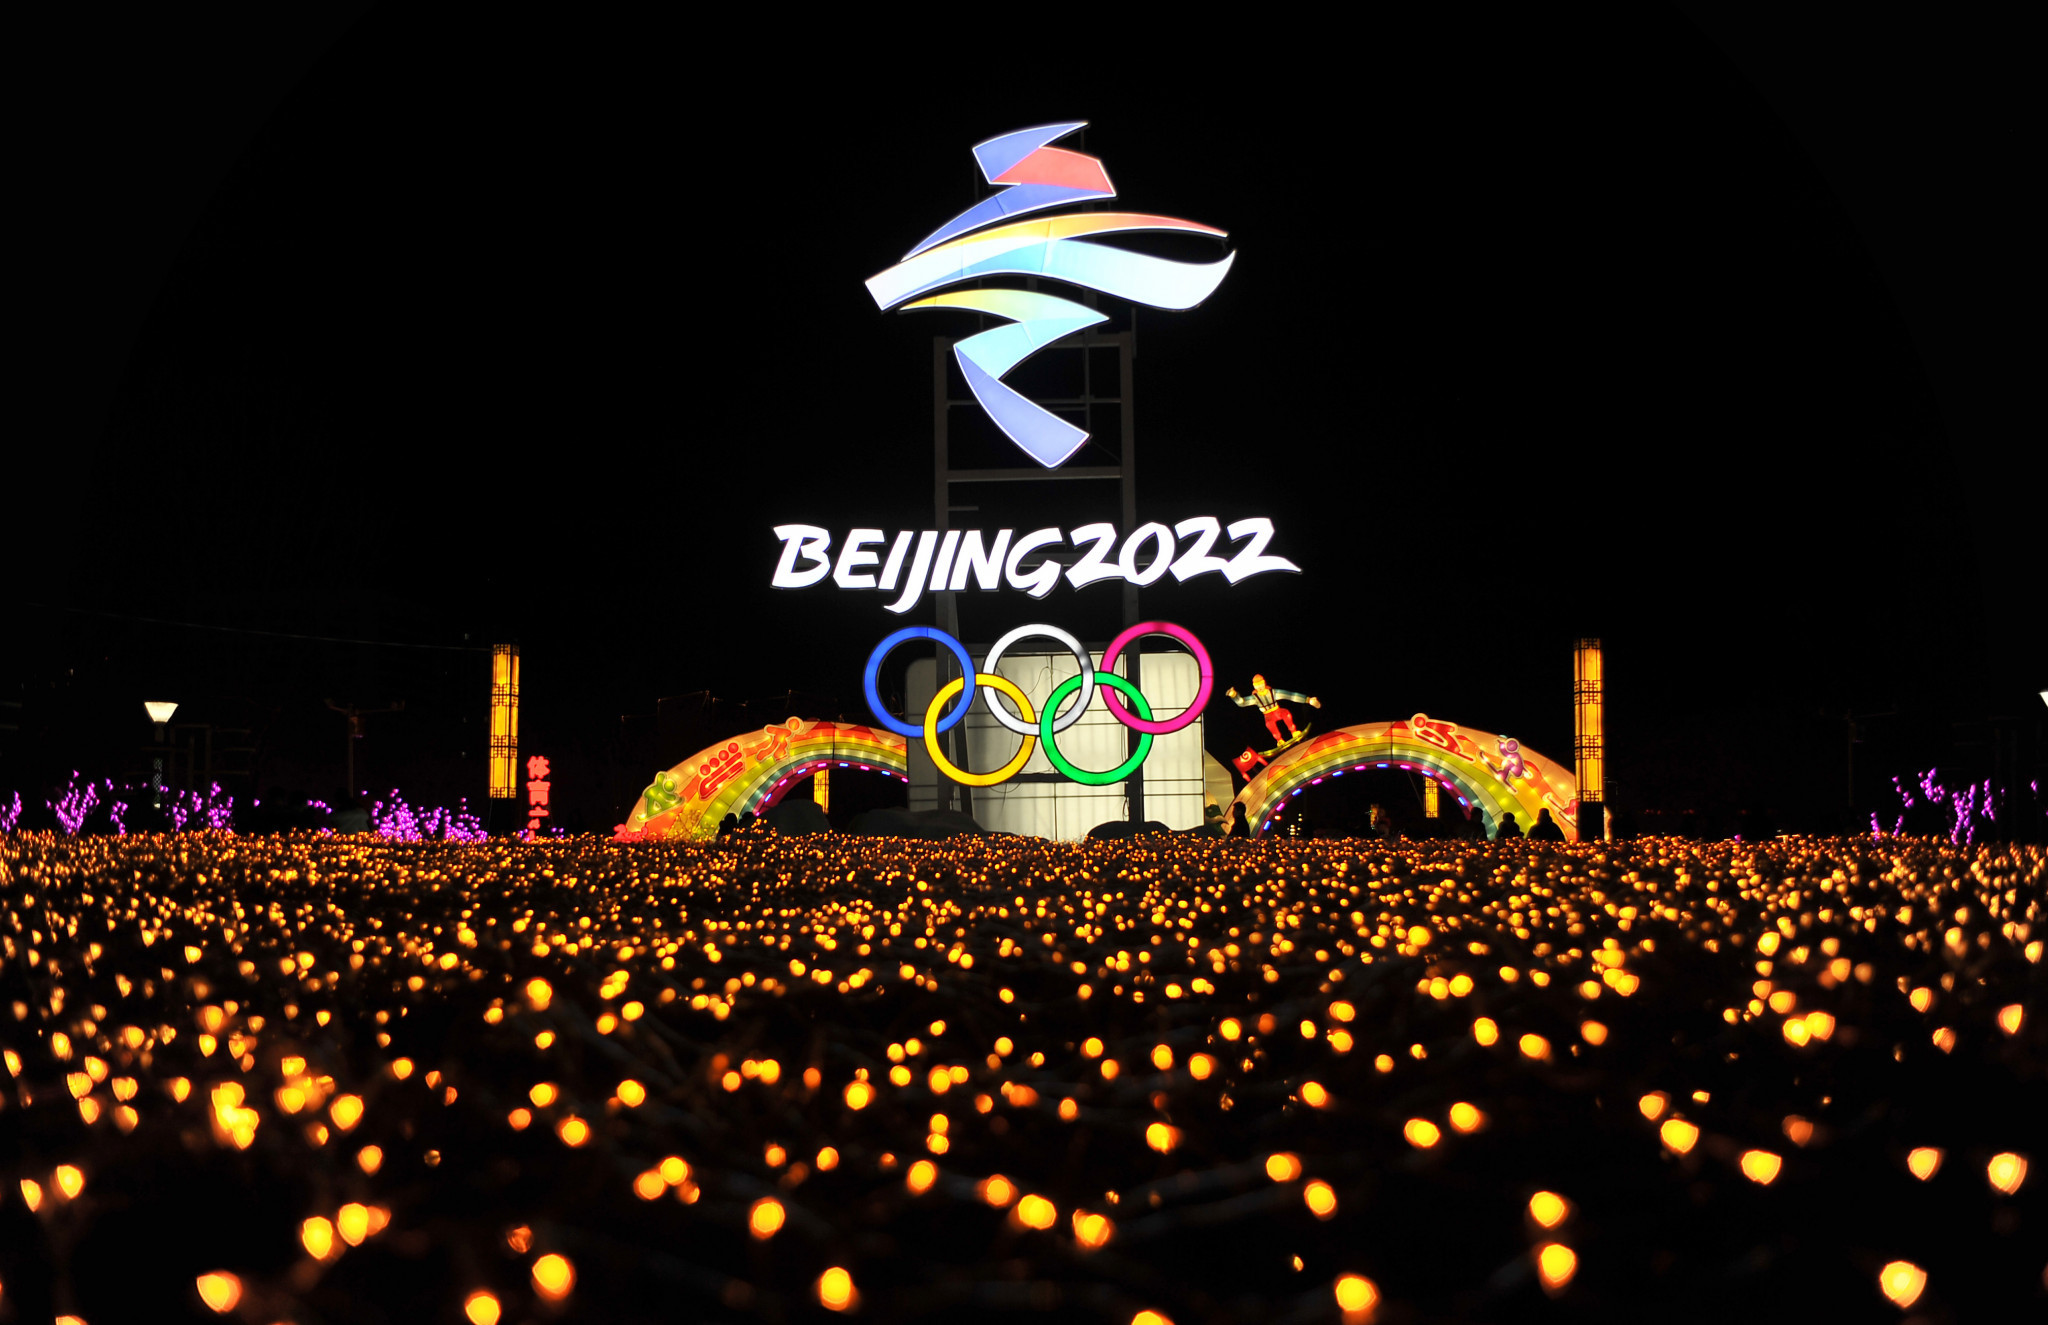 Beijing 2022 seek mascot designs as deadline for entrants approaches